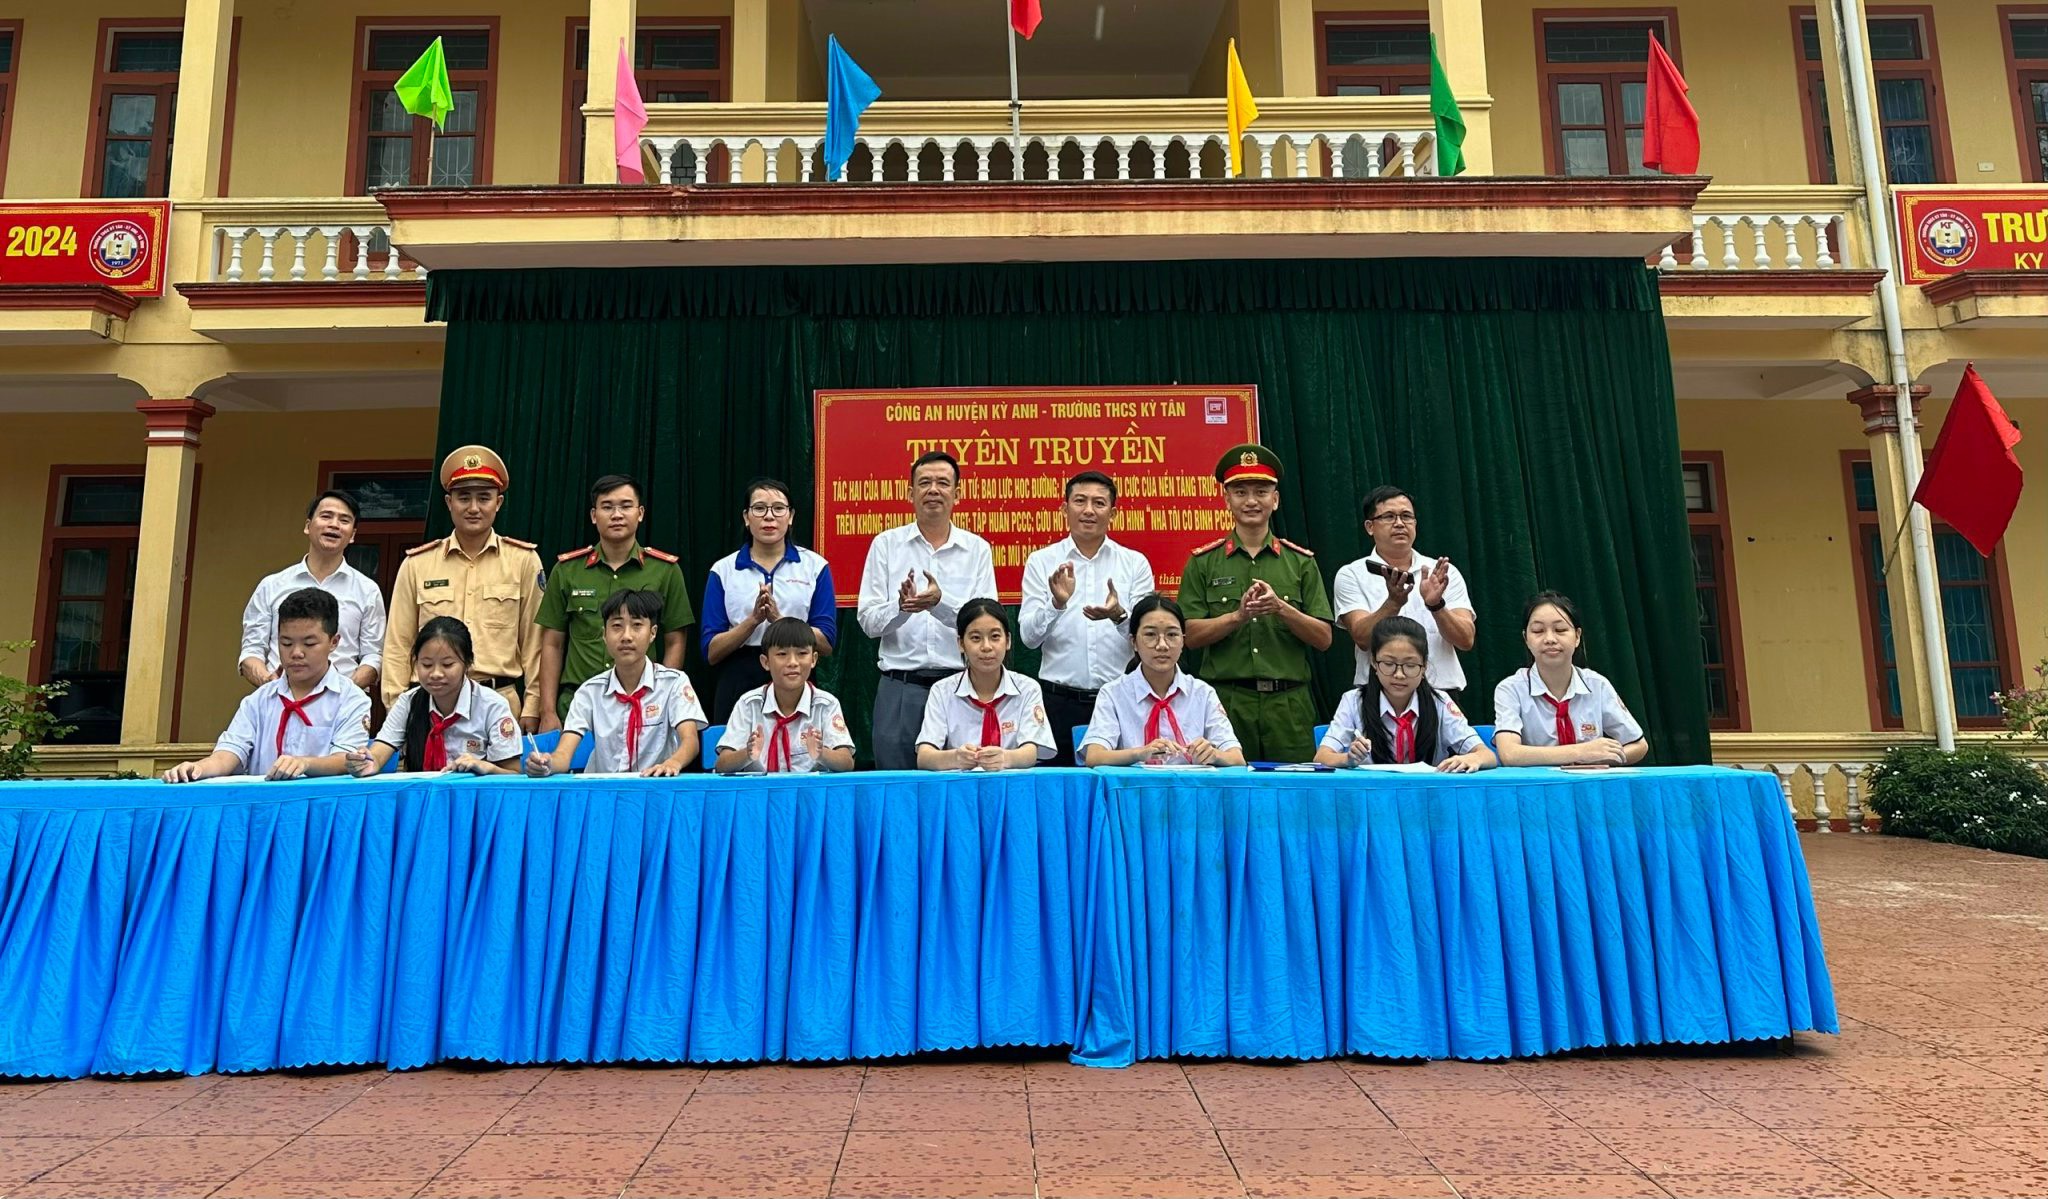 Ban công an xã triển khai công tác Phòng cháy chữa cháy cho học sinh Trường THCS Kỳ Tân